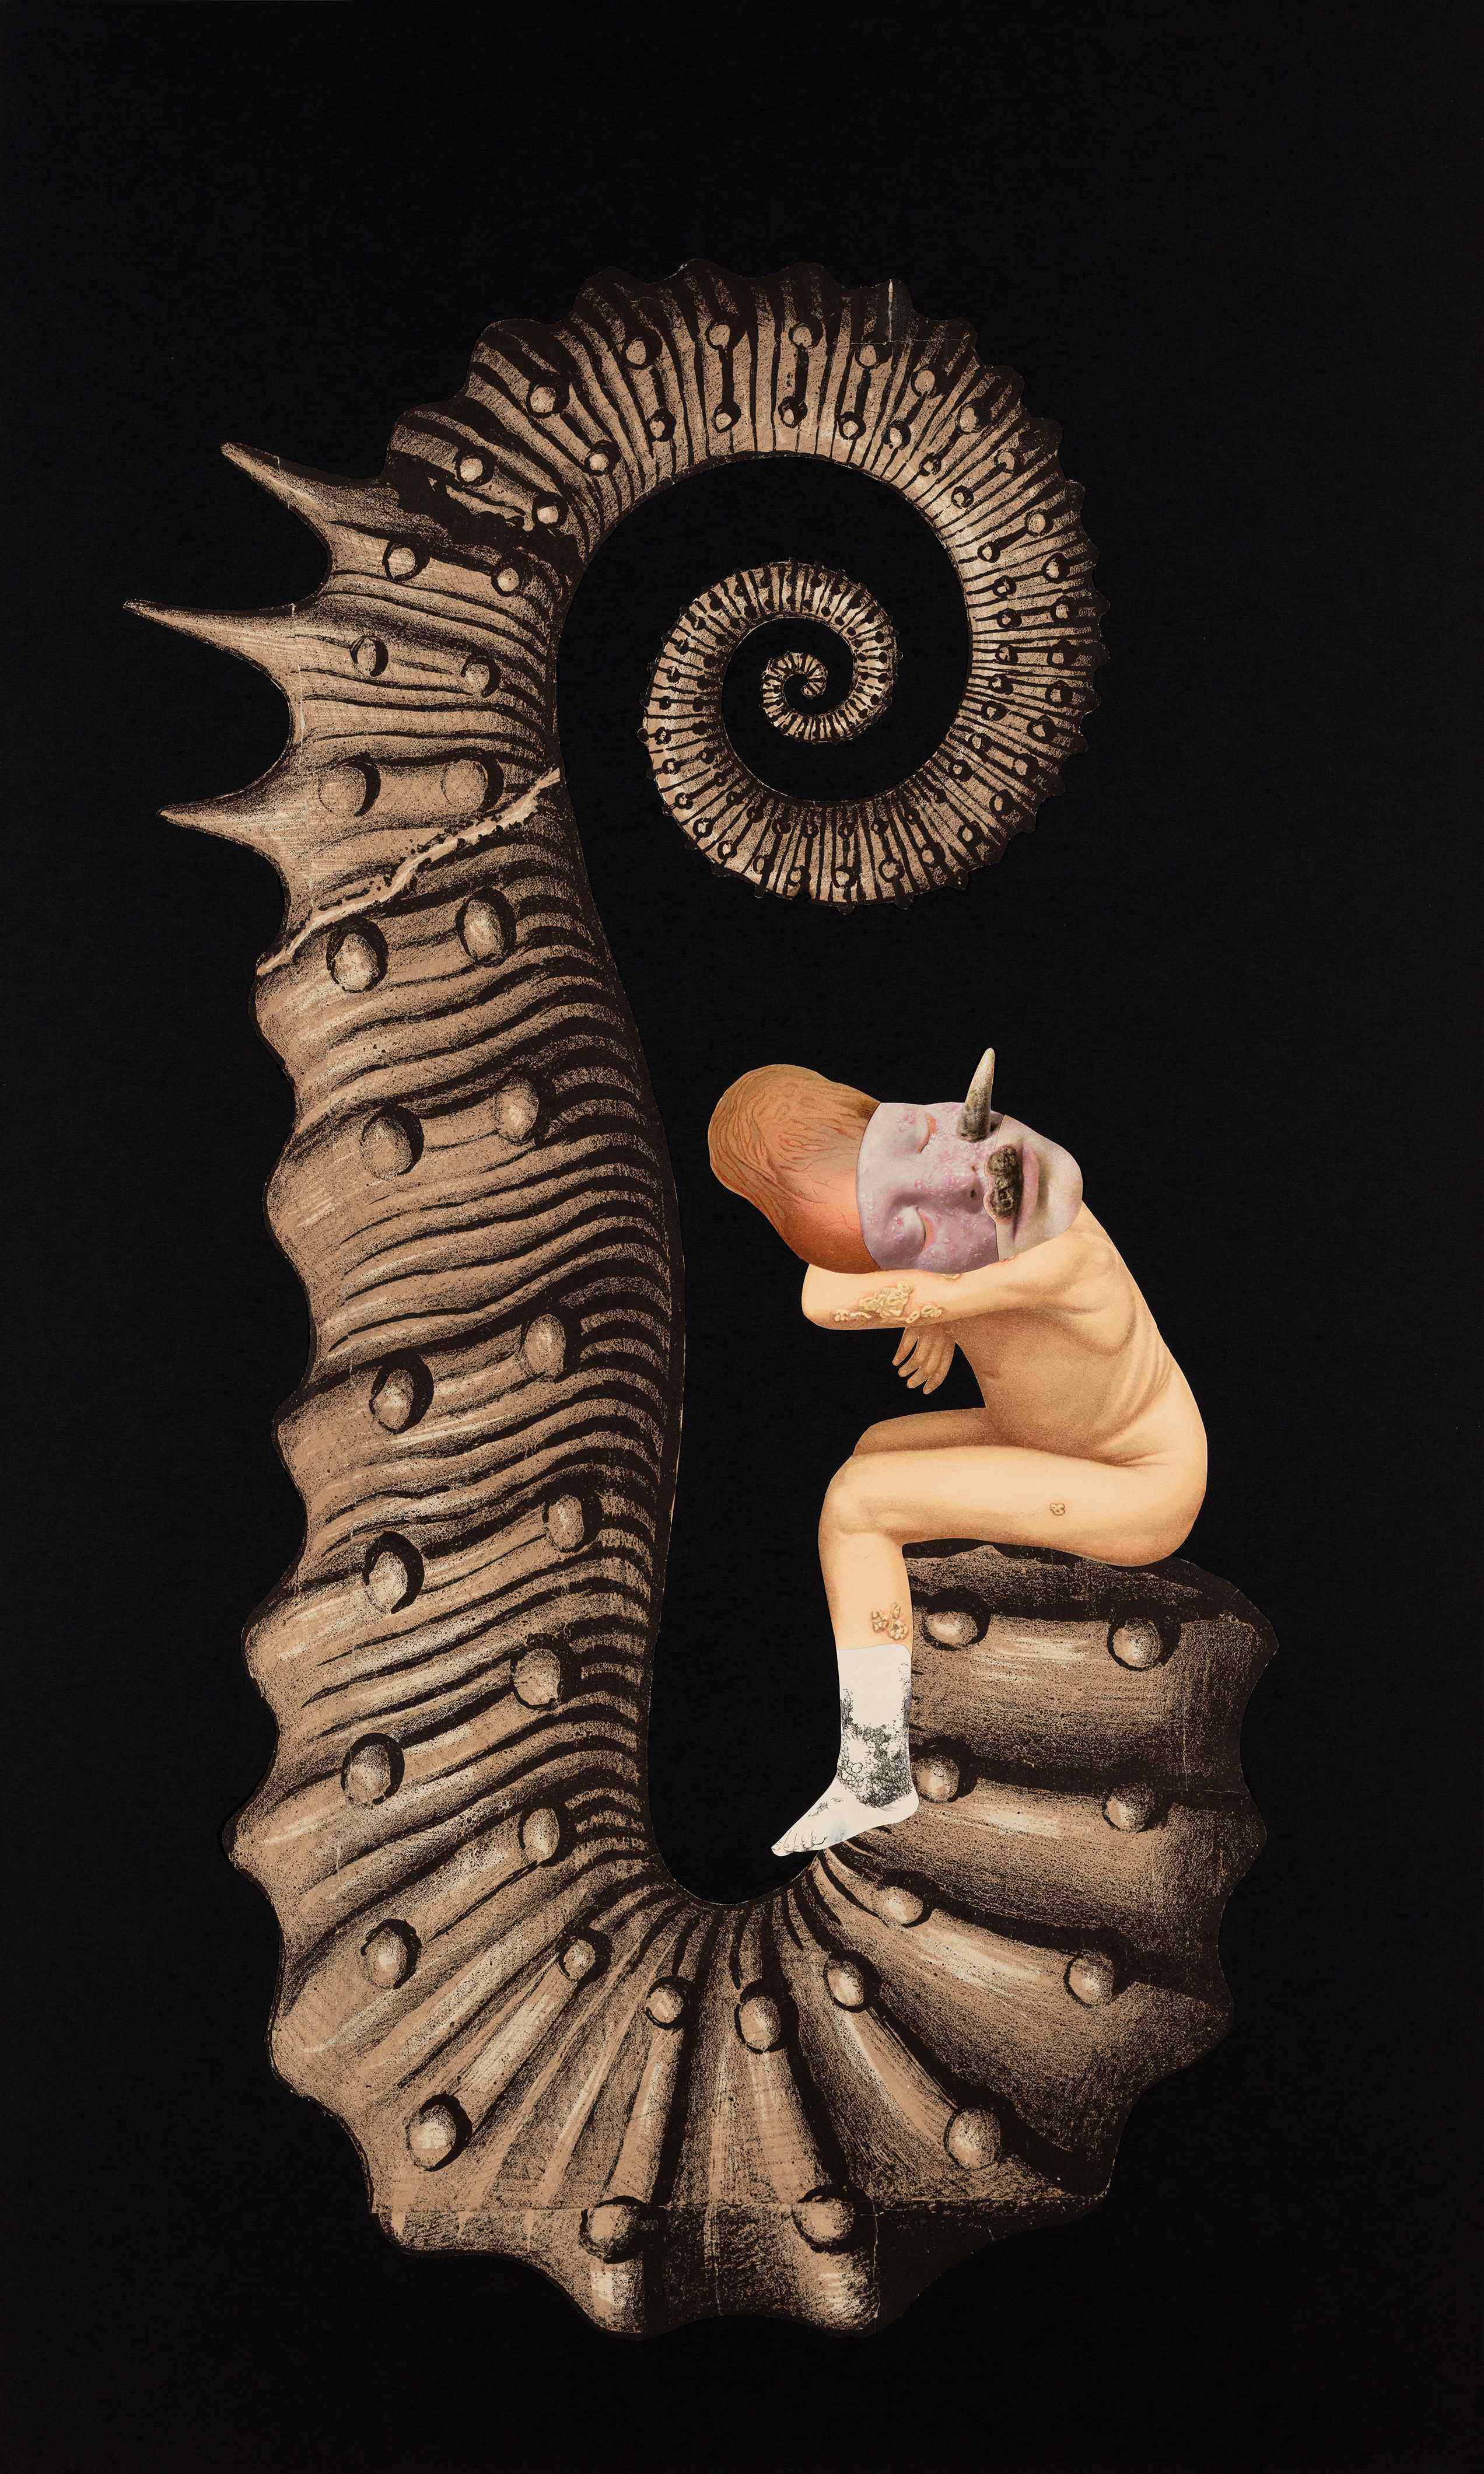 Bild der Kärntner Künstlerin Ines Doujak, das im Rahmen der MMKK-Schau "nevertheless.nichtsdestotrotz" gezeigt wird